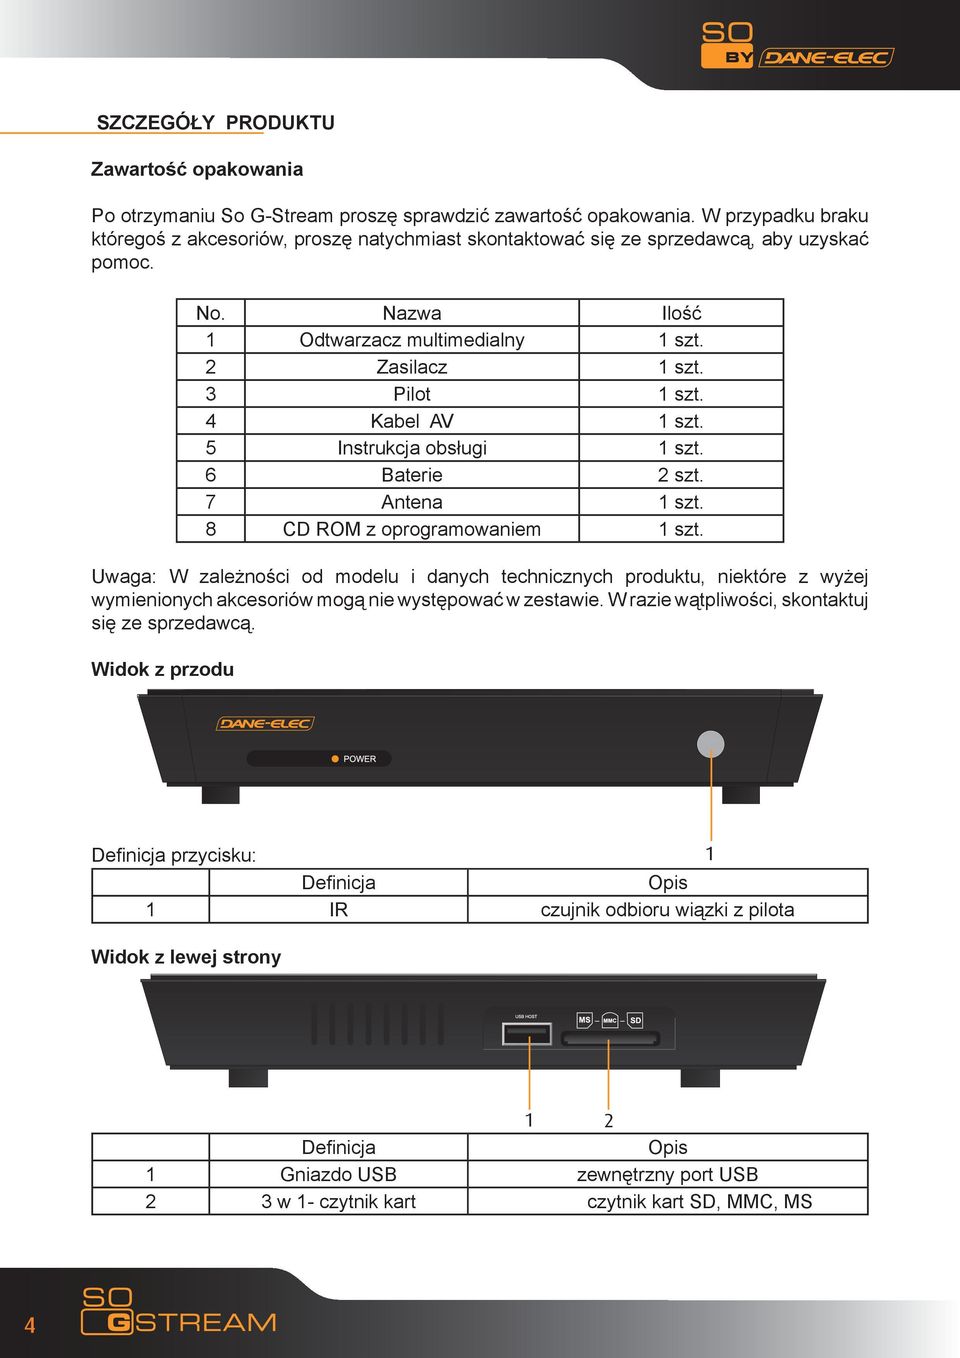 4 Kabel AV 1 szt. 5 Instrukcja obsługi 1 szt. 6 Baterie 2 szt. 7 Antena 1 szt. 8 CD ROM z oprogramowaniem 1 szt.